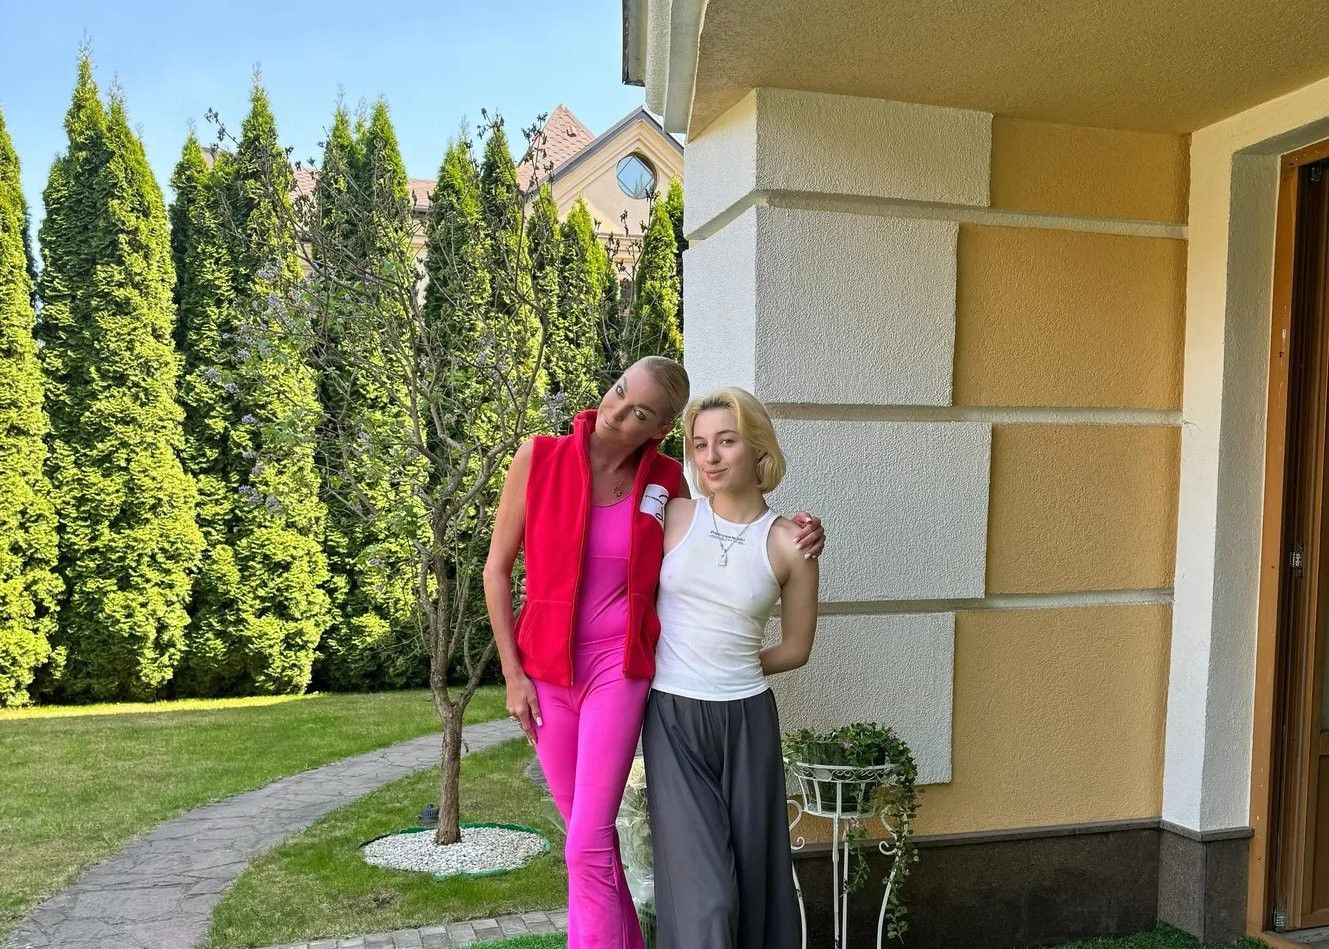 Анастасия Волочкова показала фотографию со своей 18-летней дочерью Ариадной в загородном доме